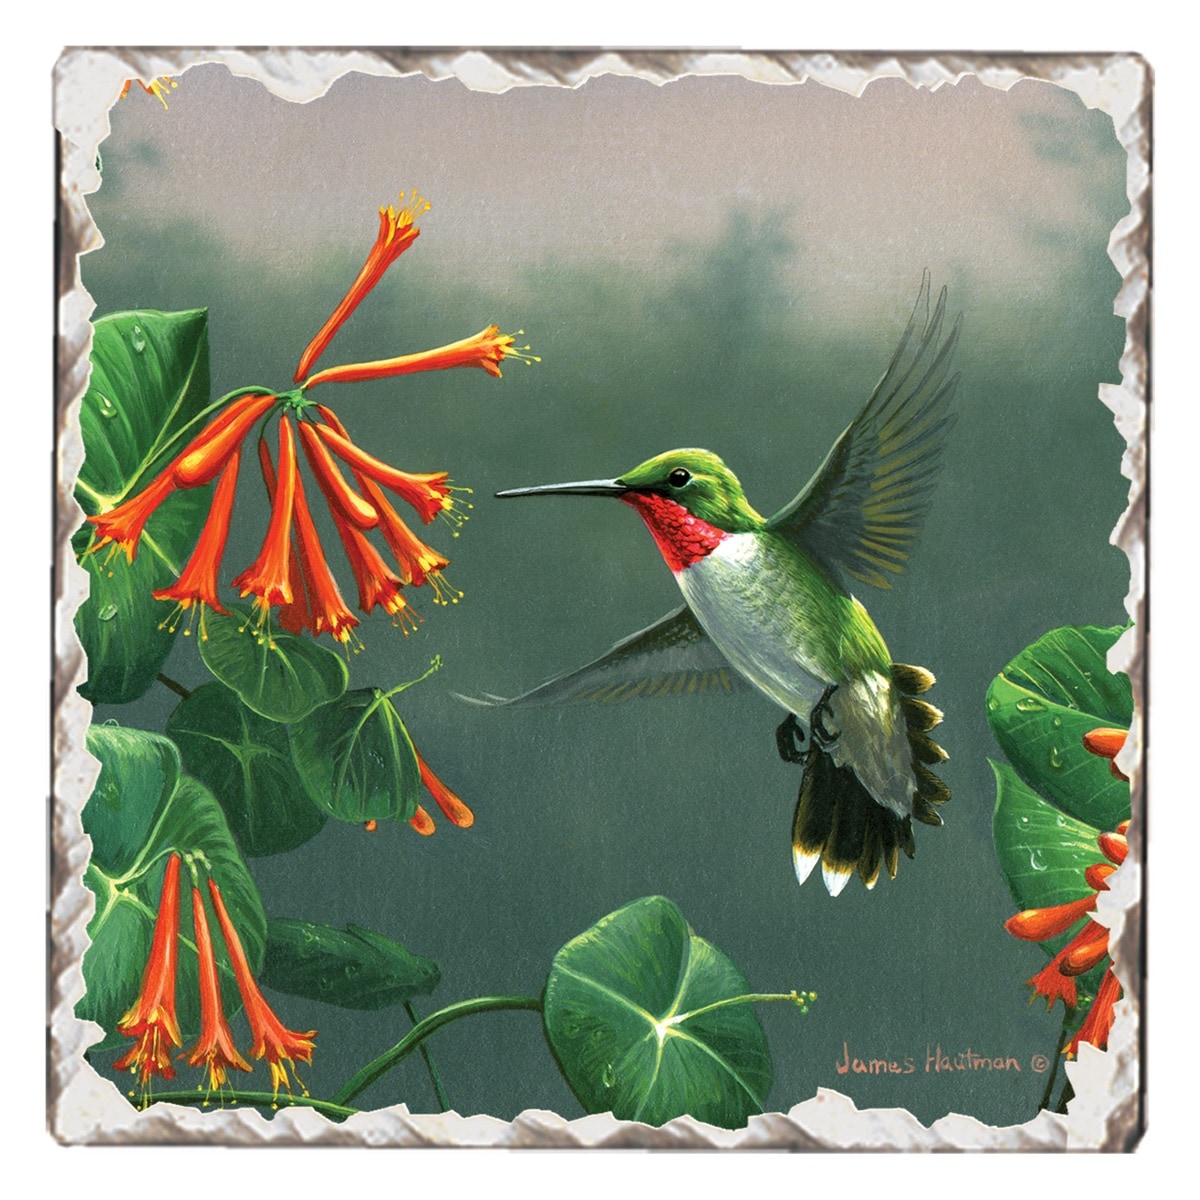 Set of (4) Hummingbird Coasters